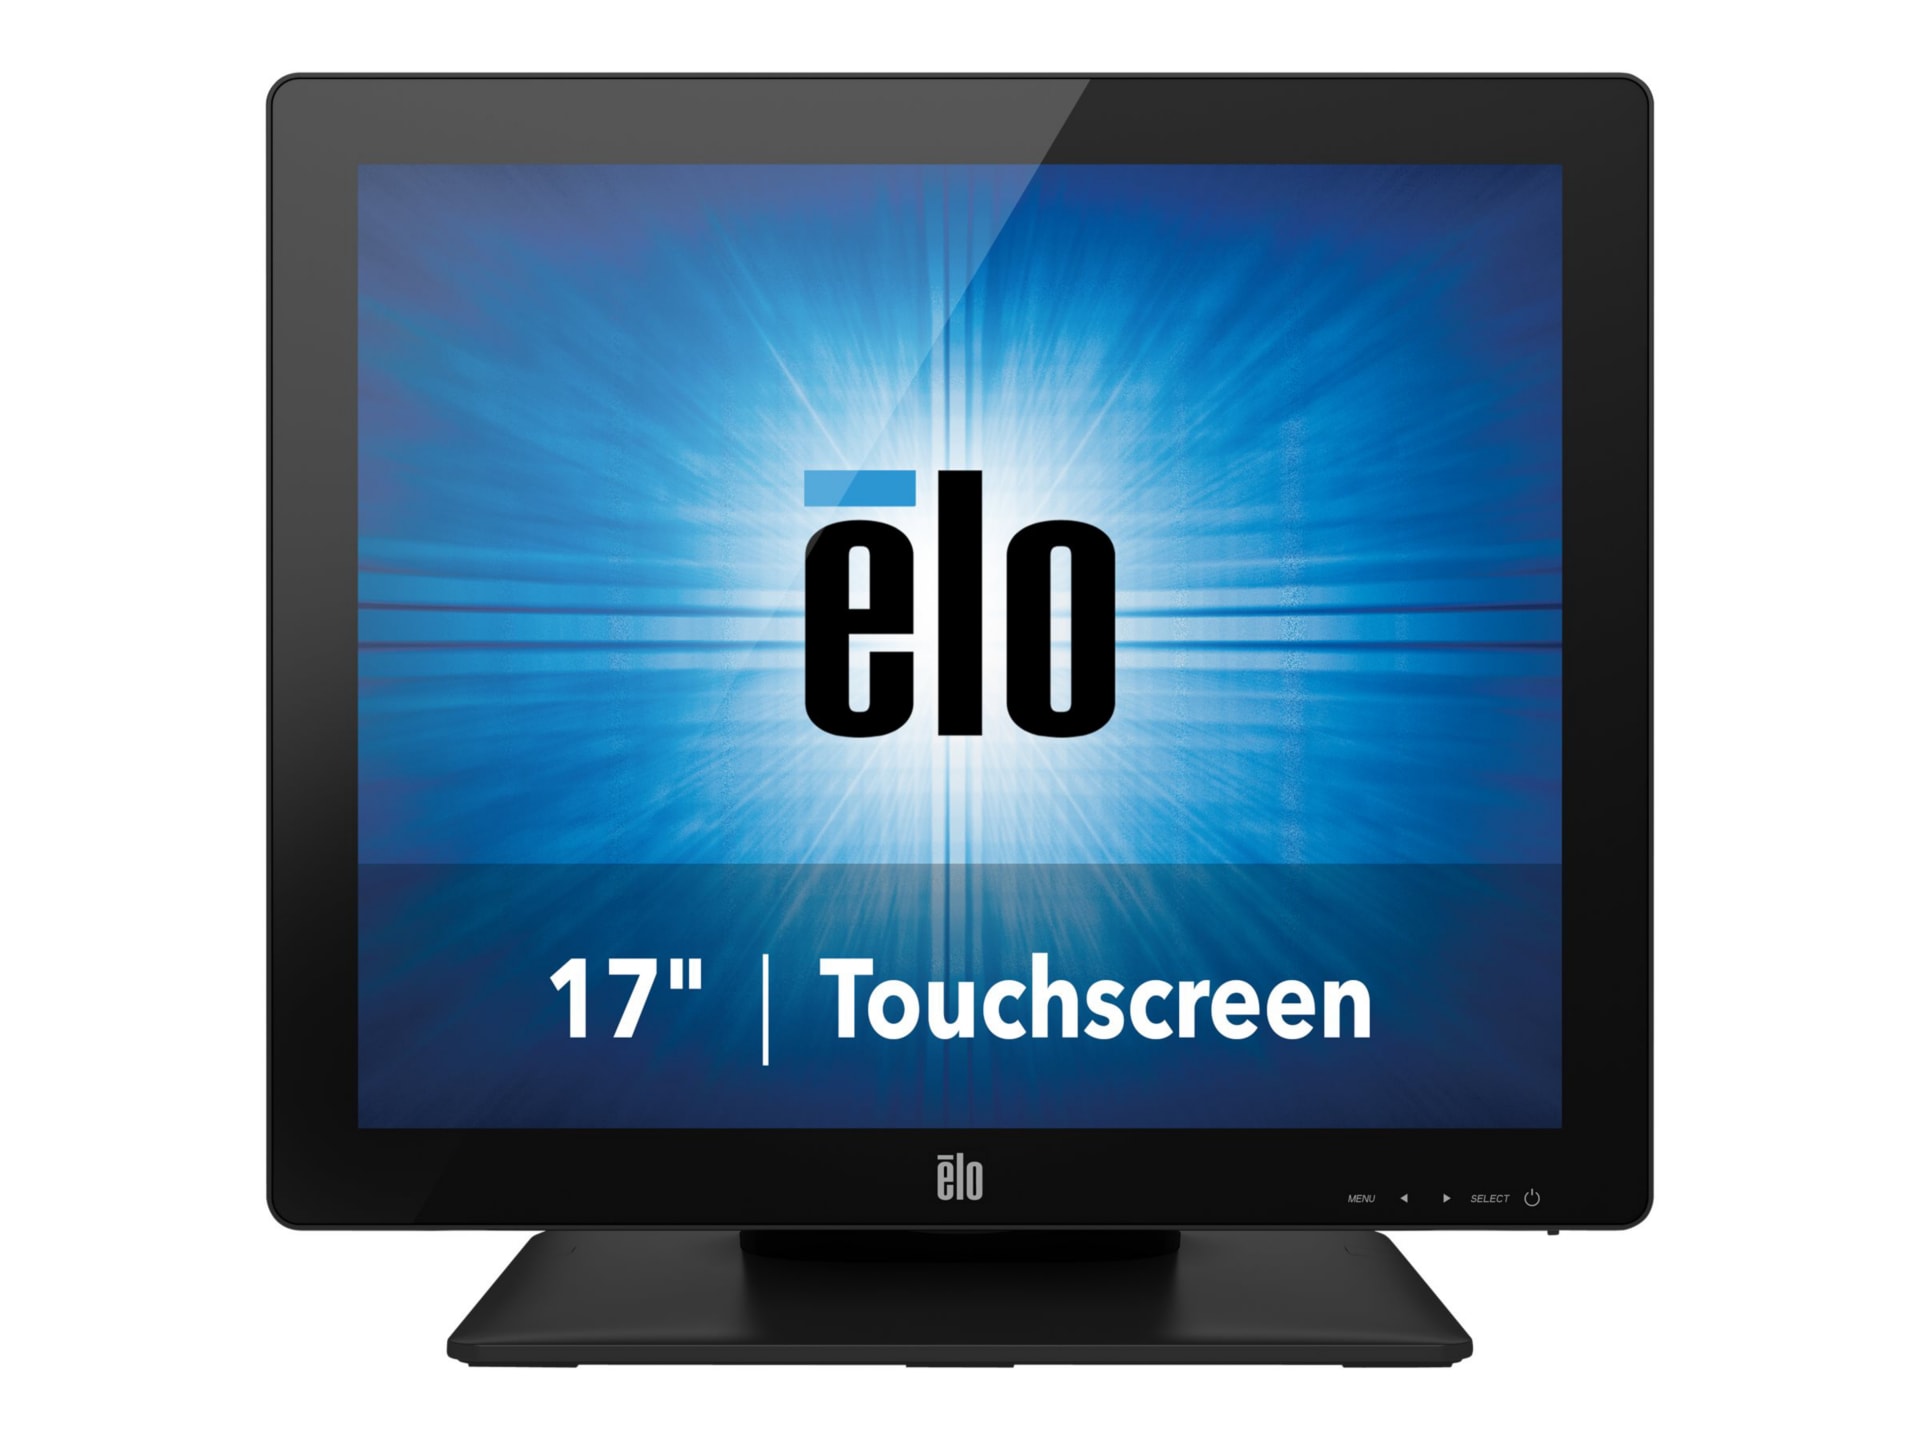 Elo 1717 17" Touchscreen Monitor